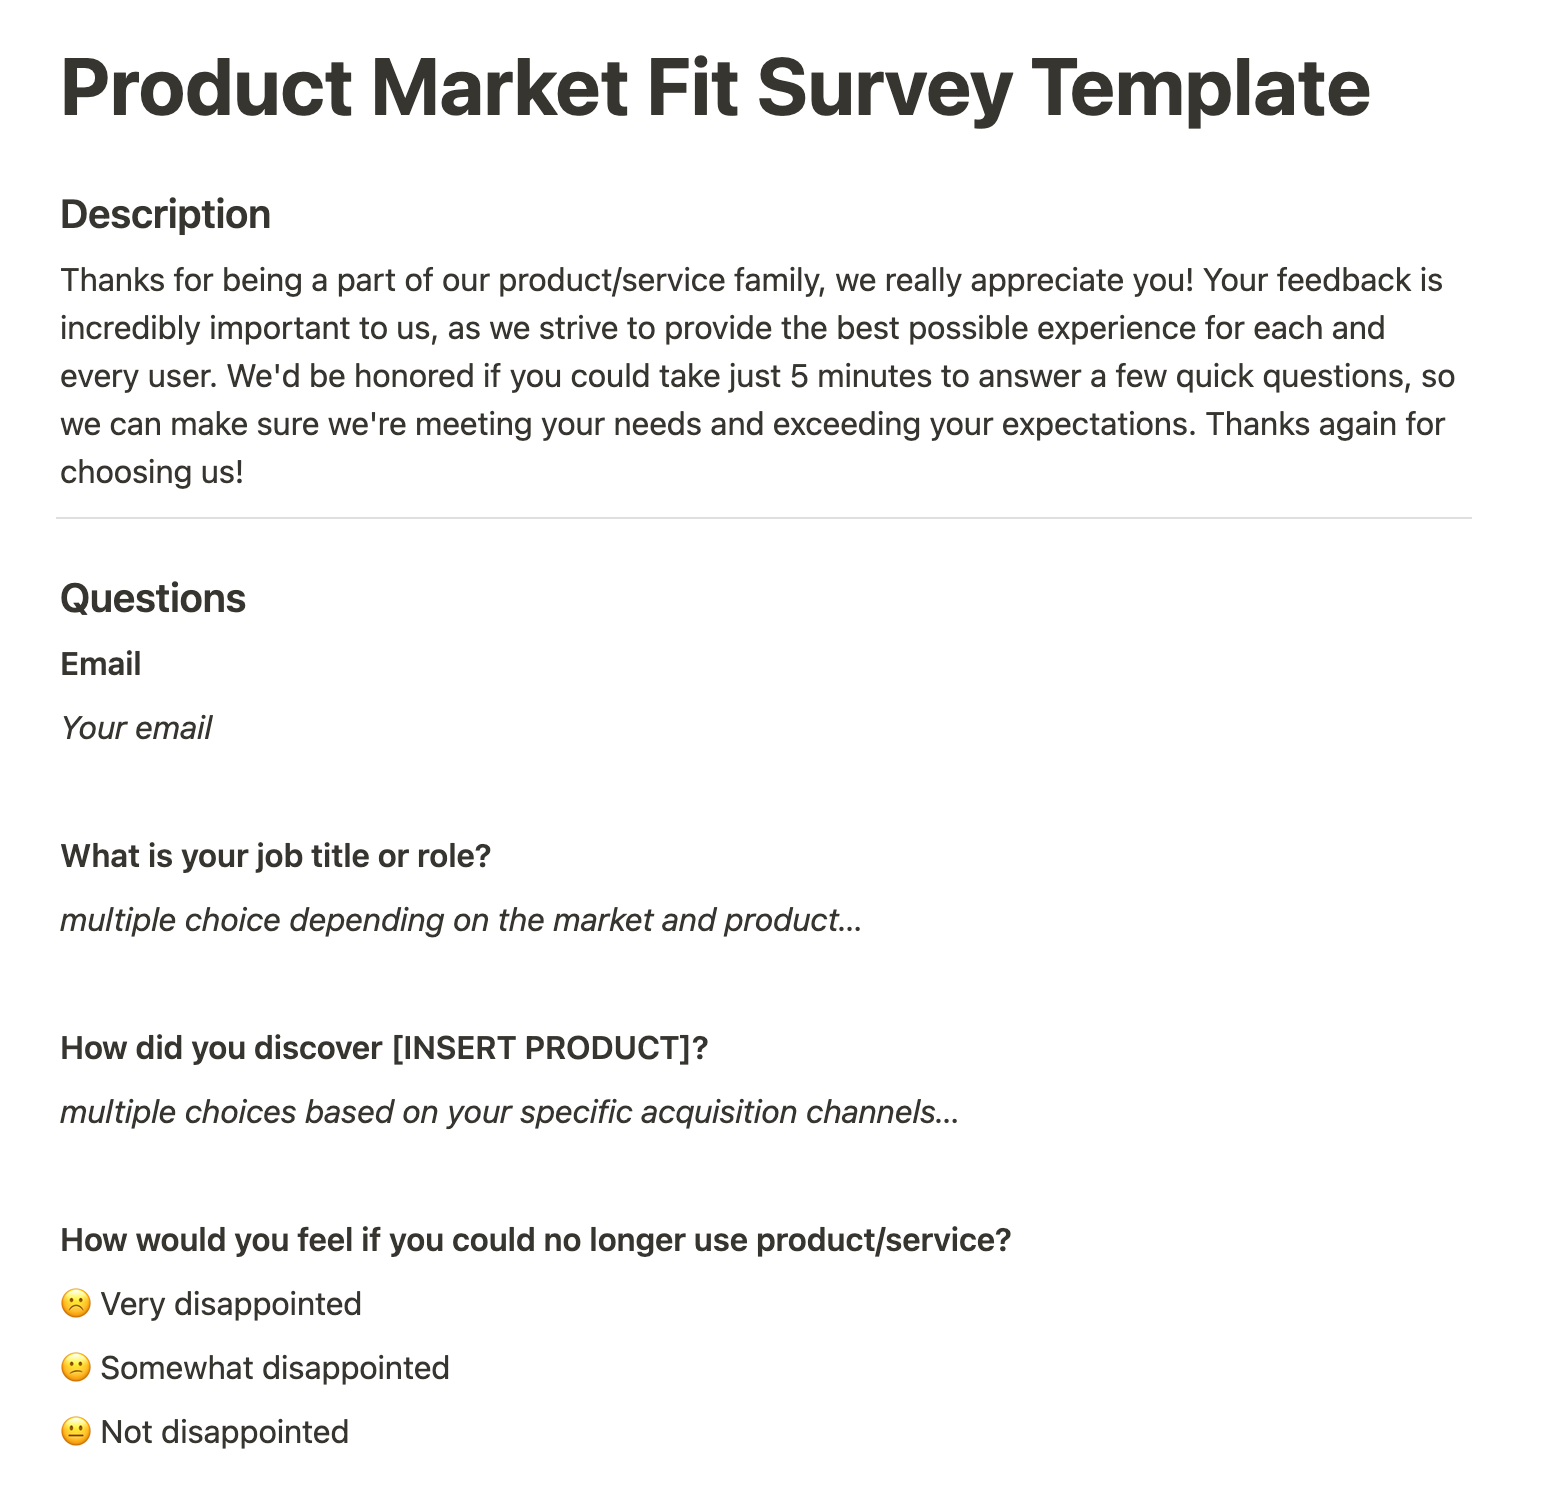 Customer Product Market Fir Survey Template